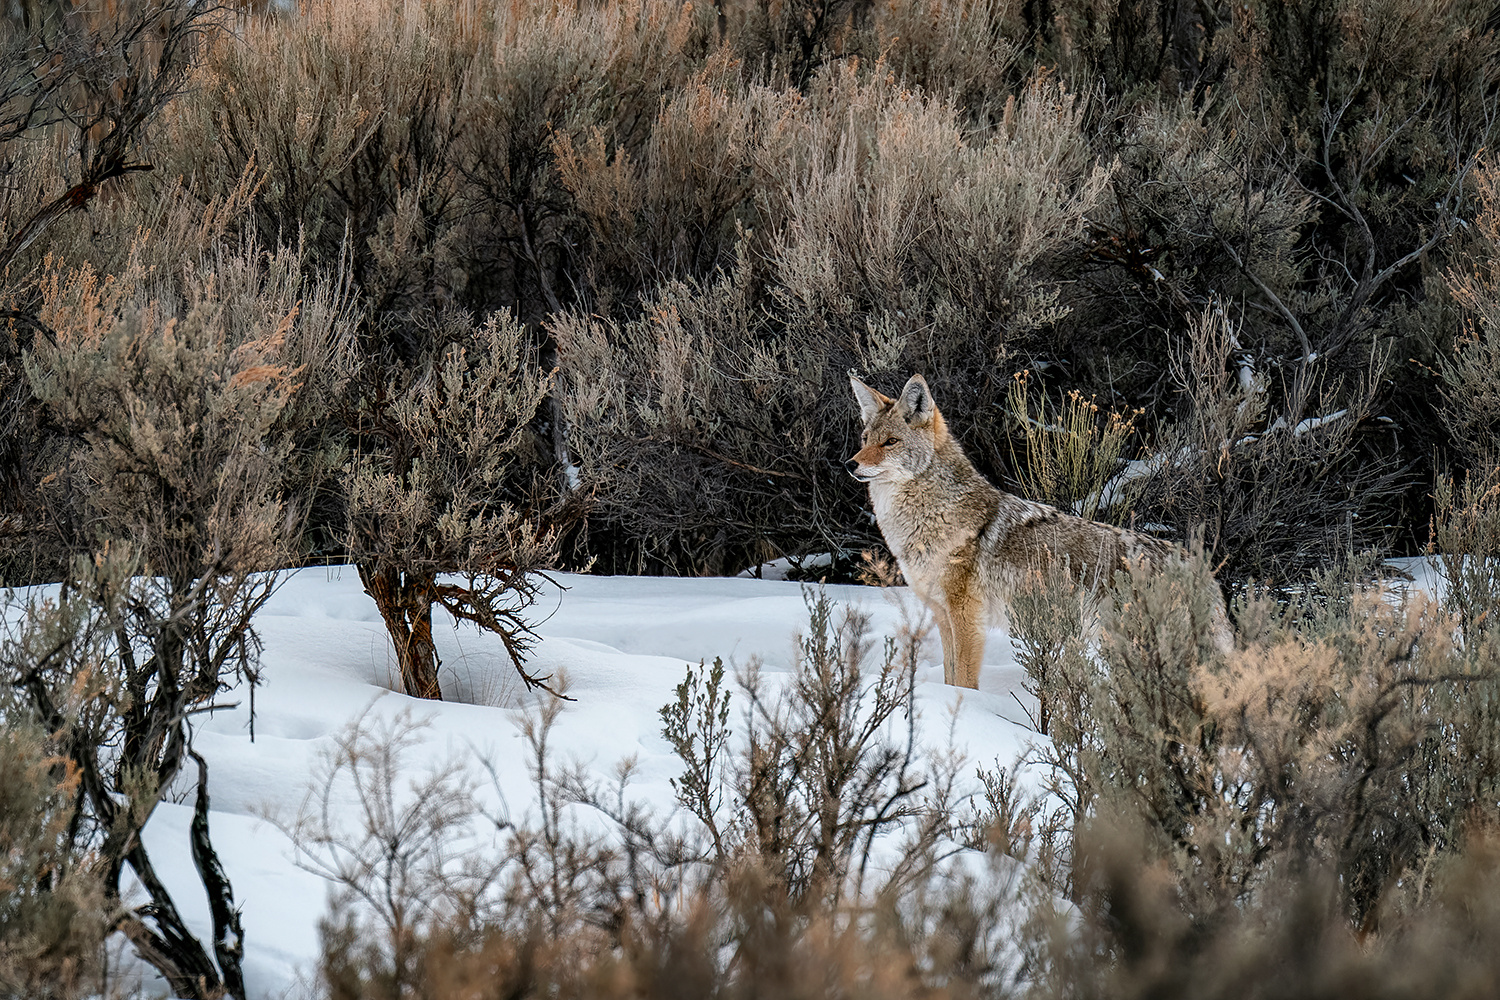 Wachsamer Kojote in seinem Habitat